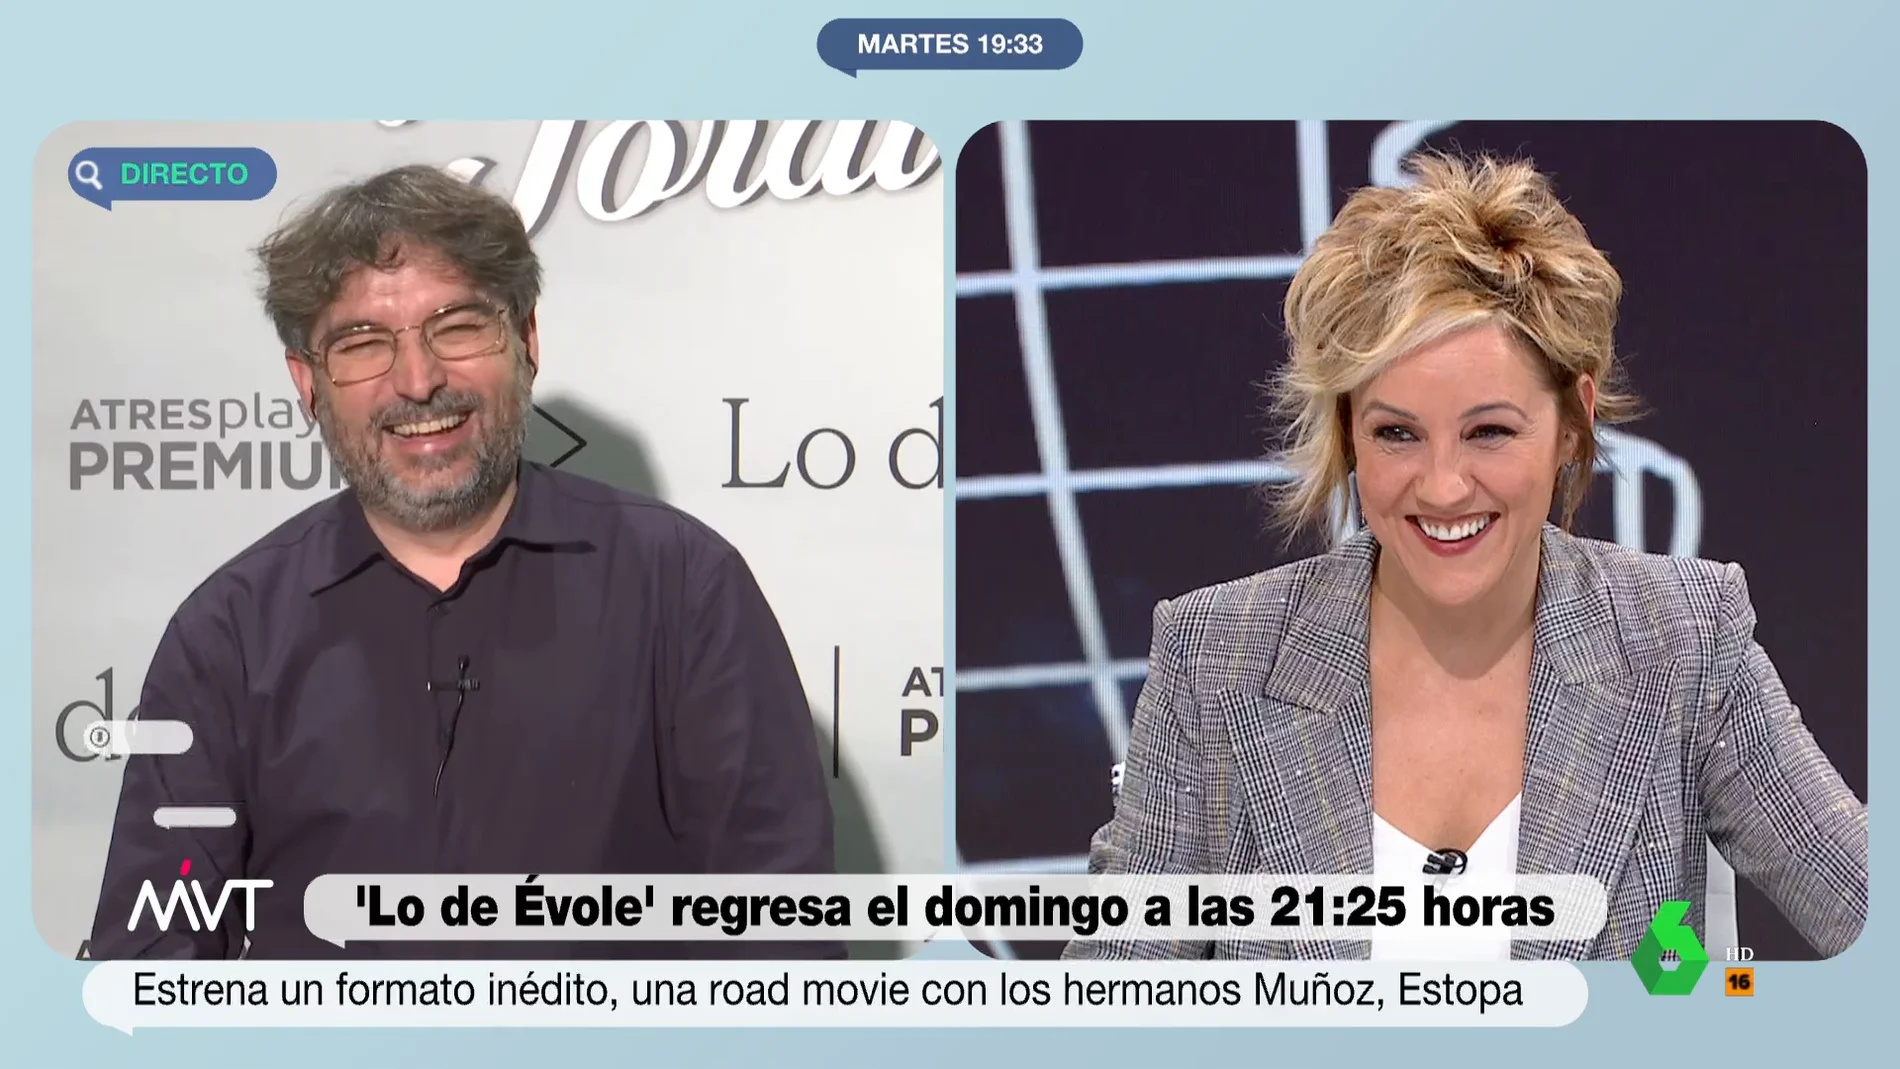 La cómica reacción de Jordi Évole cuando Cristina Pardo le pregunta si va a entrevistar a Froilán 